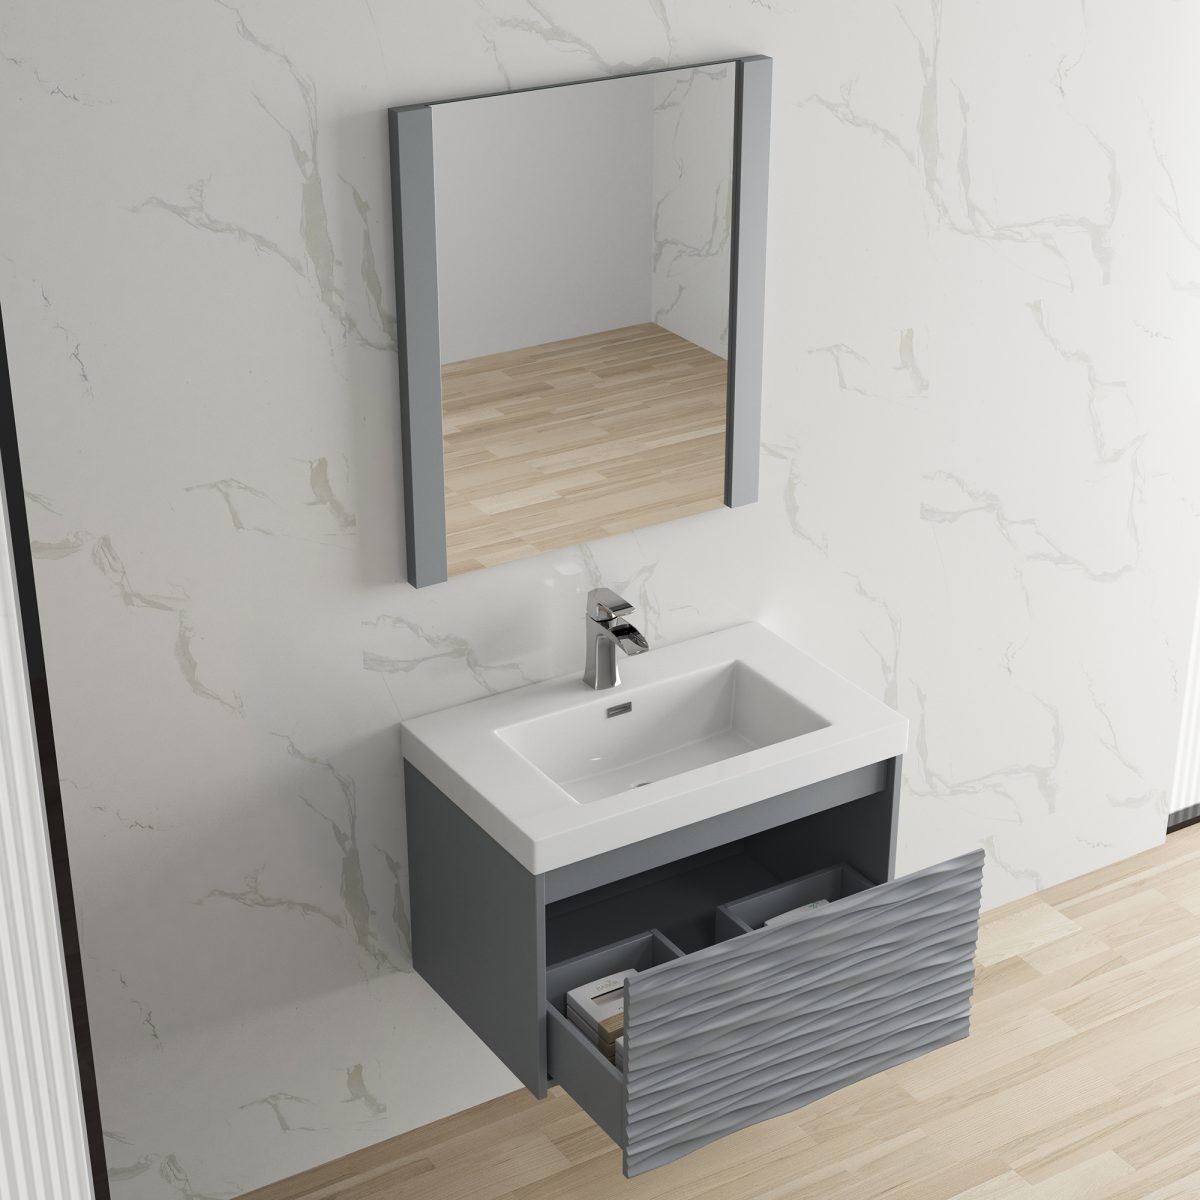 Paris 30" Bathroom Vanity  #size_30"  #color_metal grey